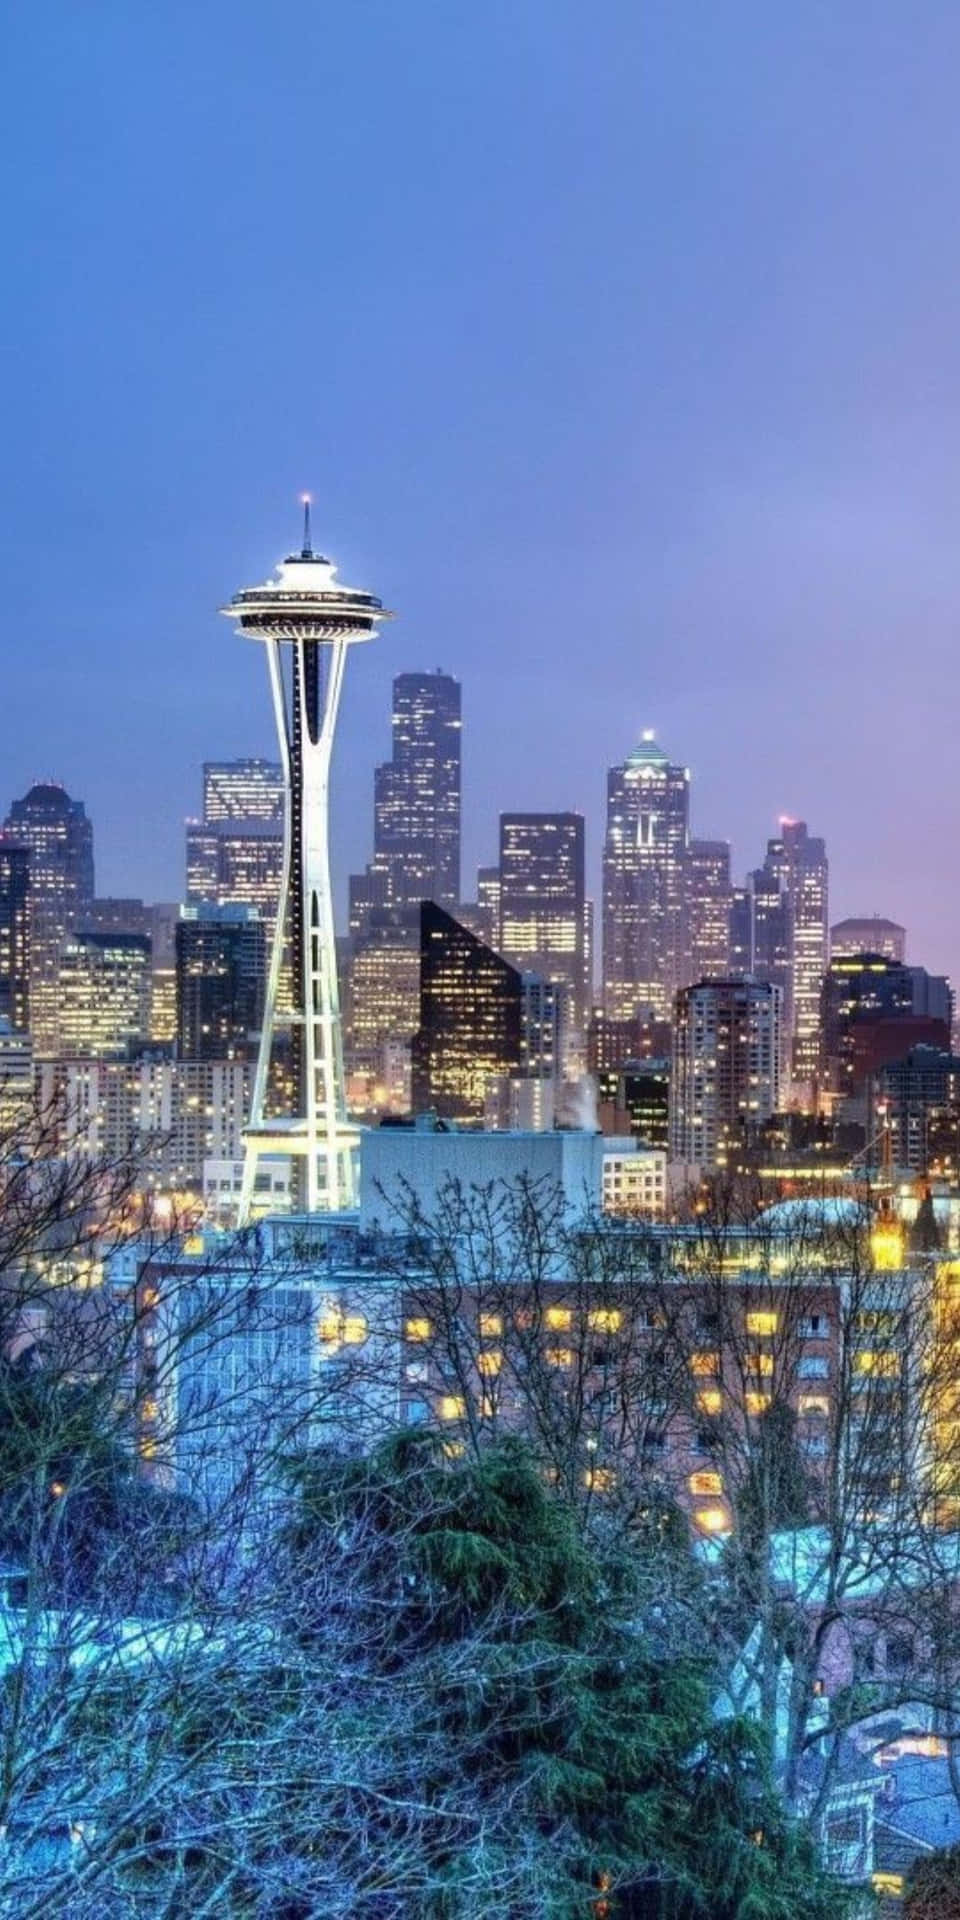 Skønheden af Seattle skyline set gennem objektivet af en Pixel 3 kamera.